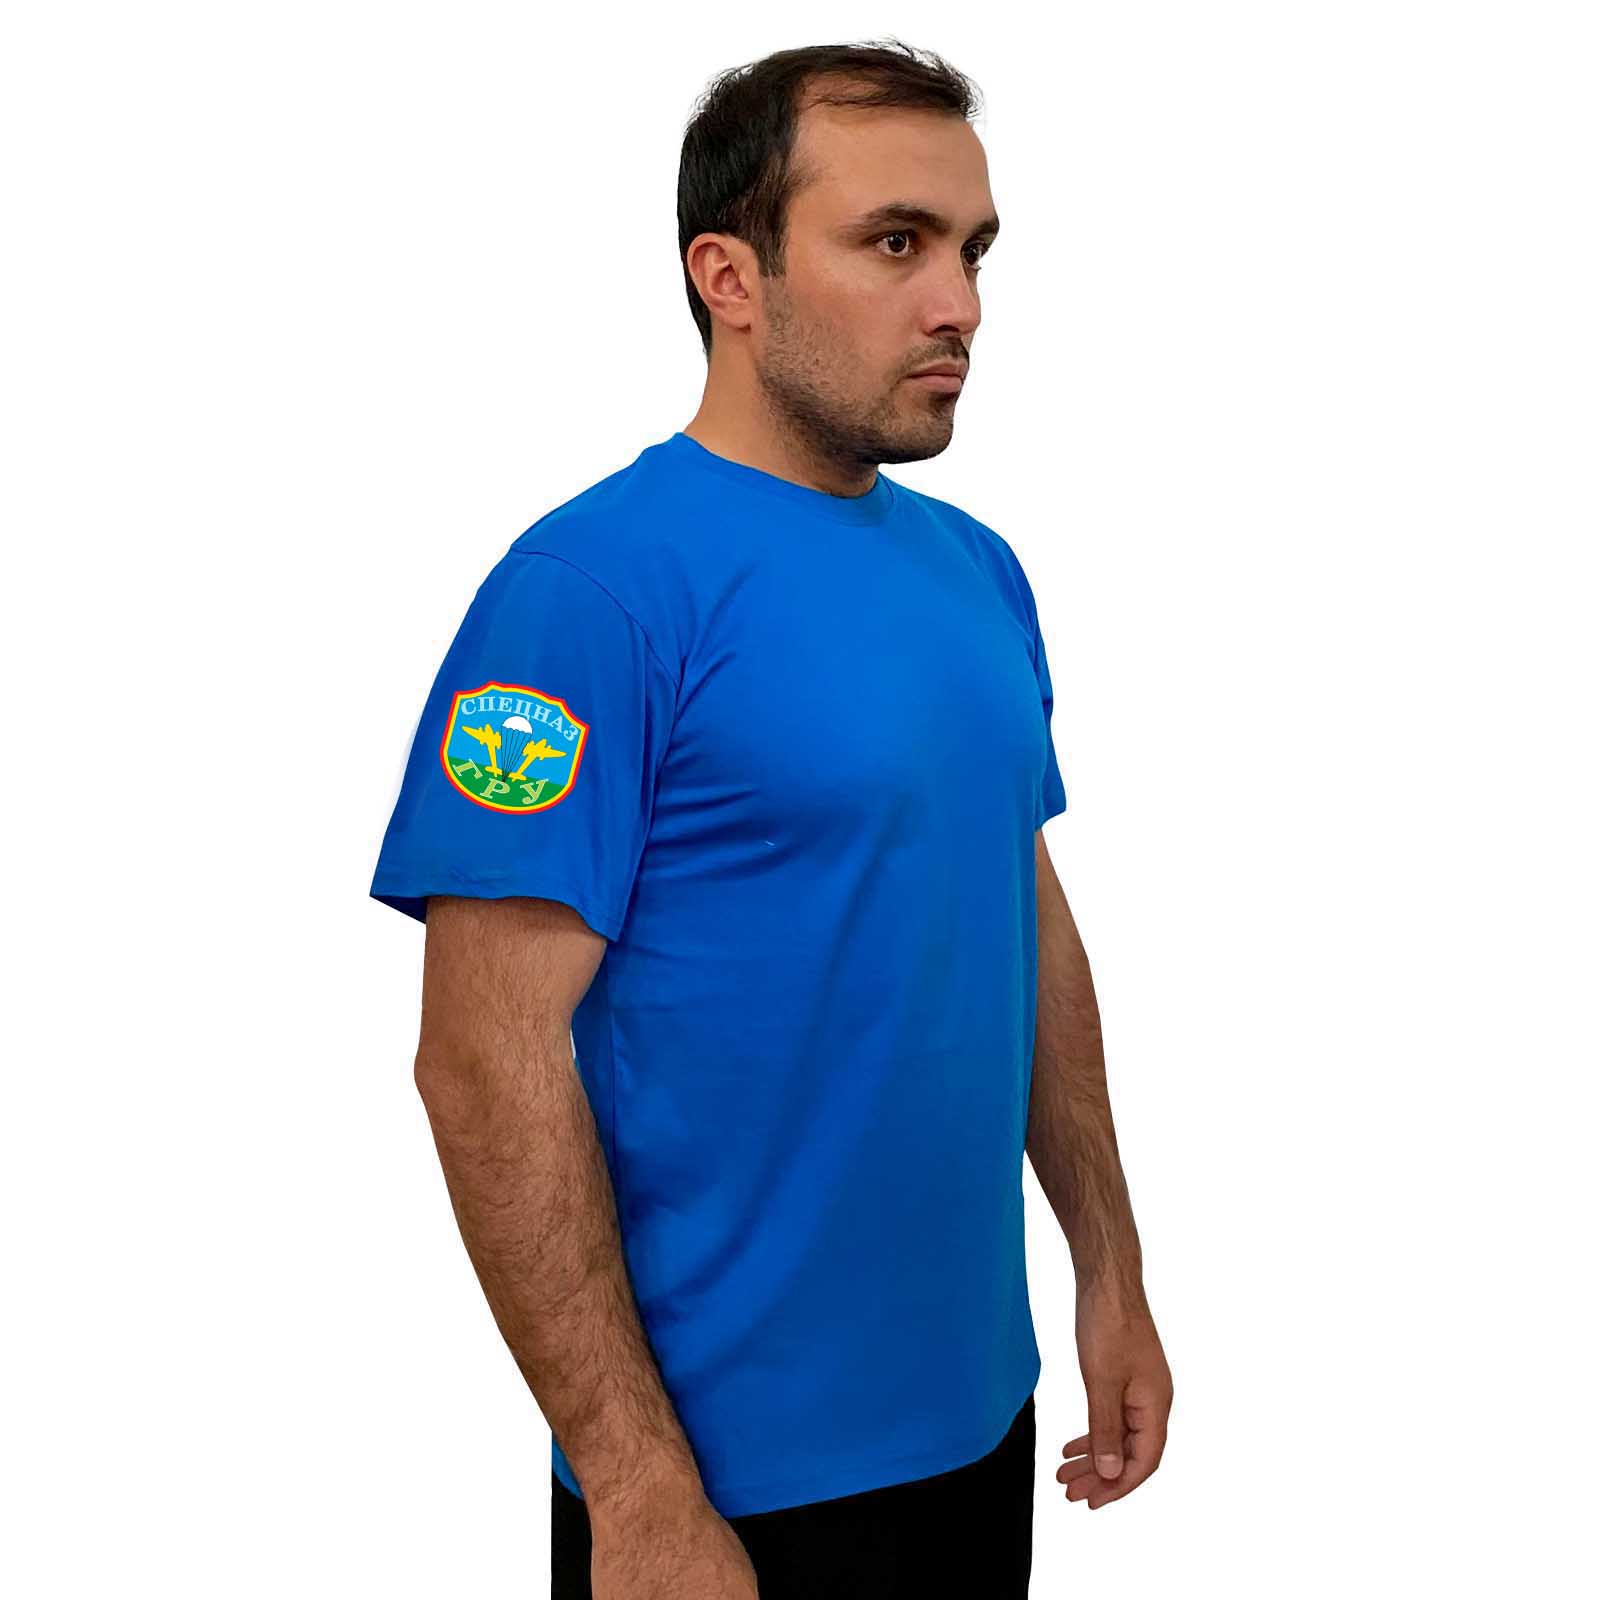 Васильковая футболка с термотрансфером "Спецназ ГРУ" на рукаве